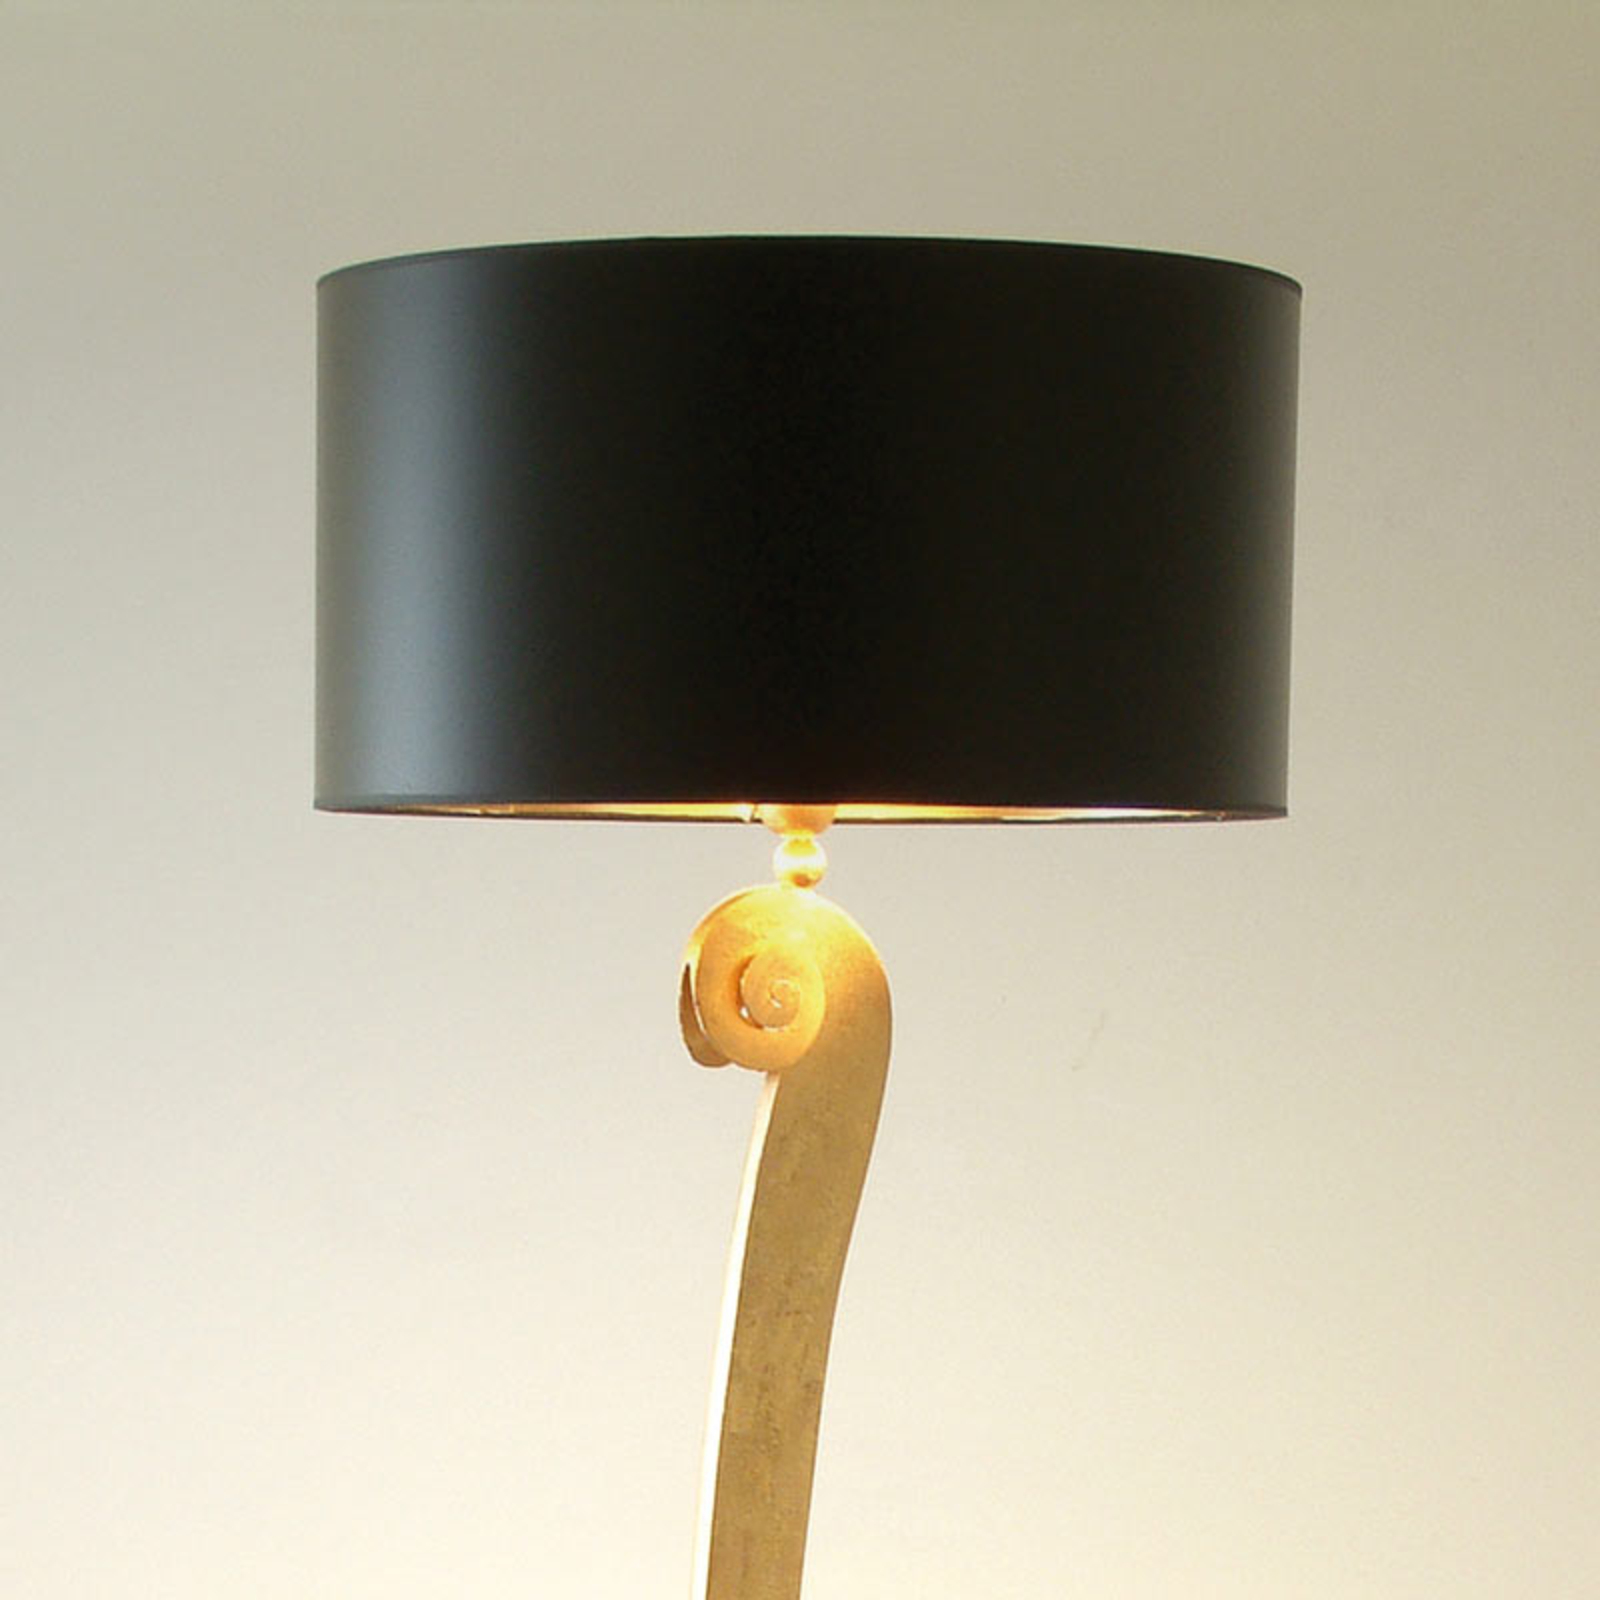 Stojací lampa Lorgolioso ve zlato-černé barvě